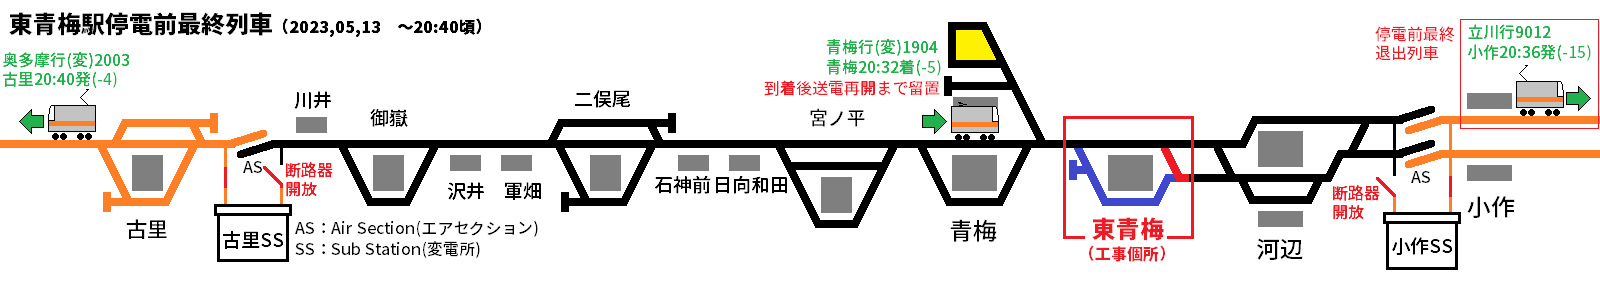 小作・古里変電所とエアセクション、停電前最終列車の位置と発車時刻の関係。